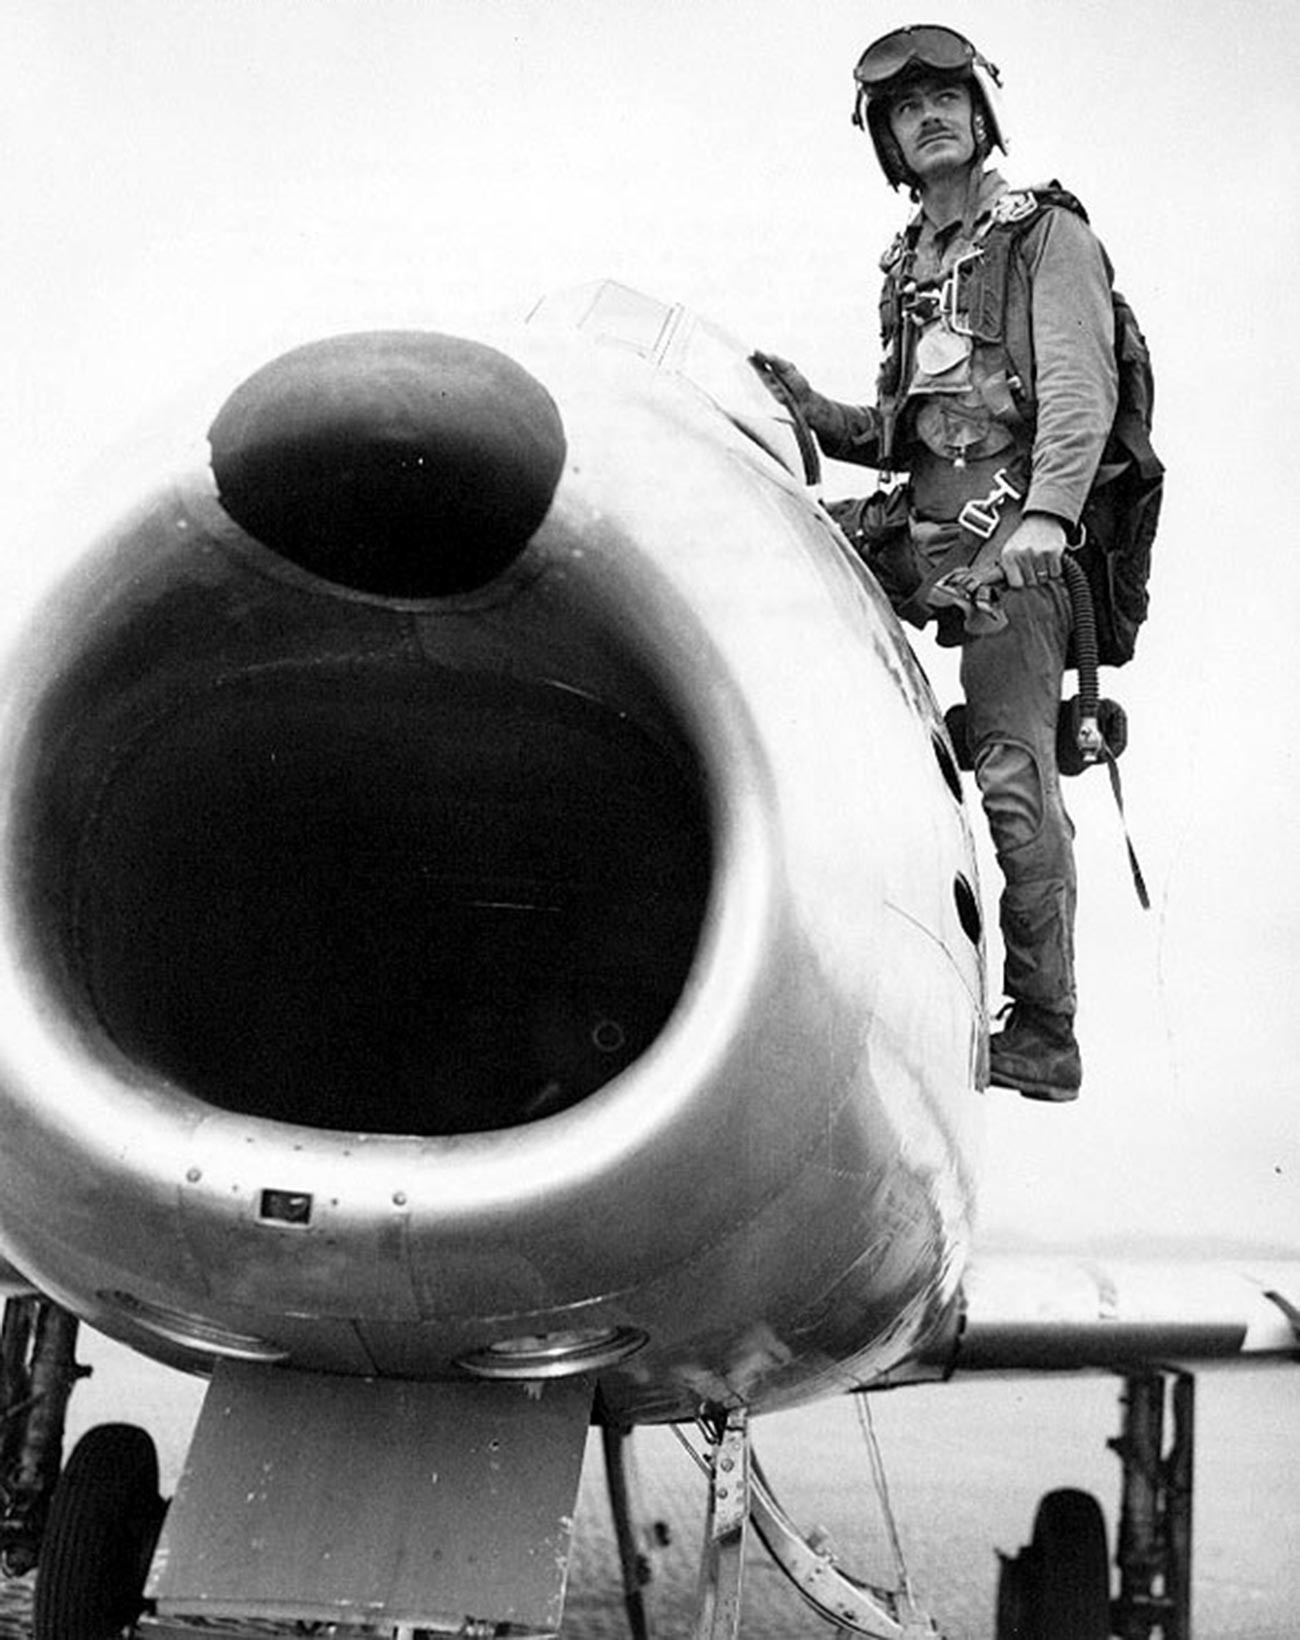 F-86で37回の飛行を行った米国軍のボルト少佐